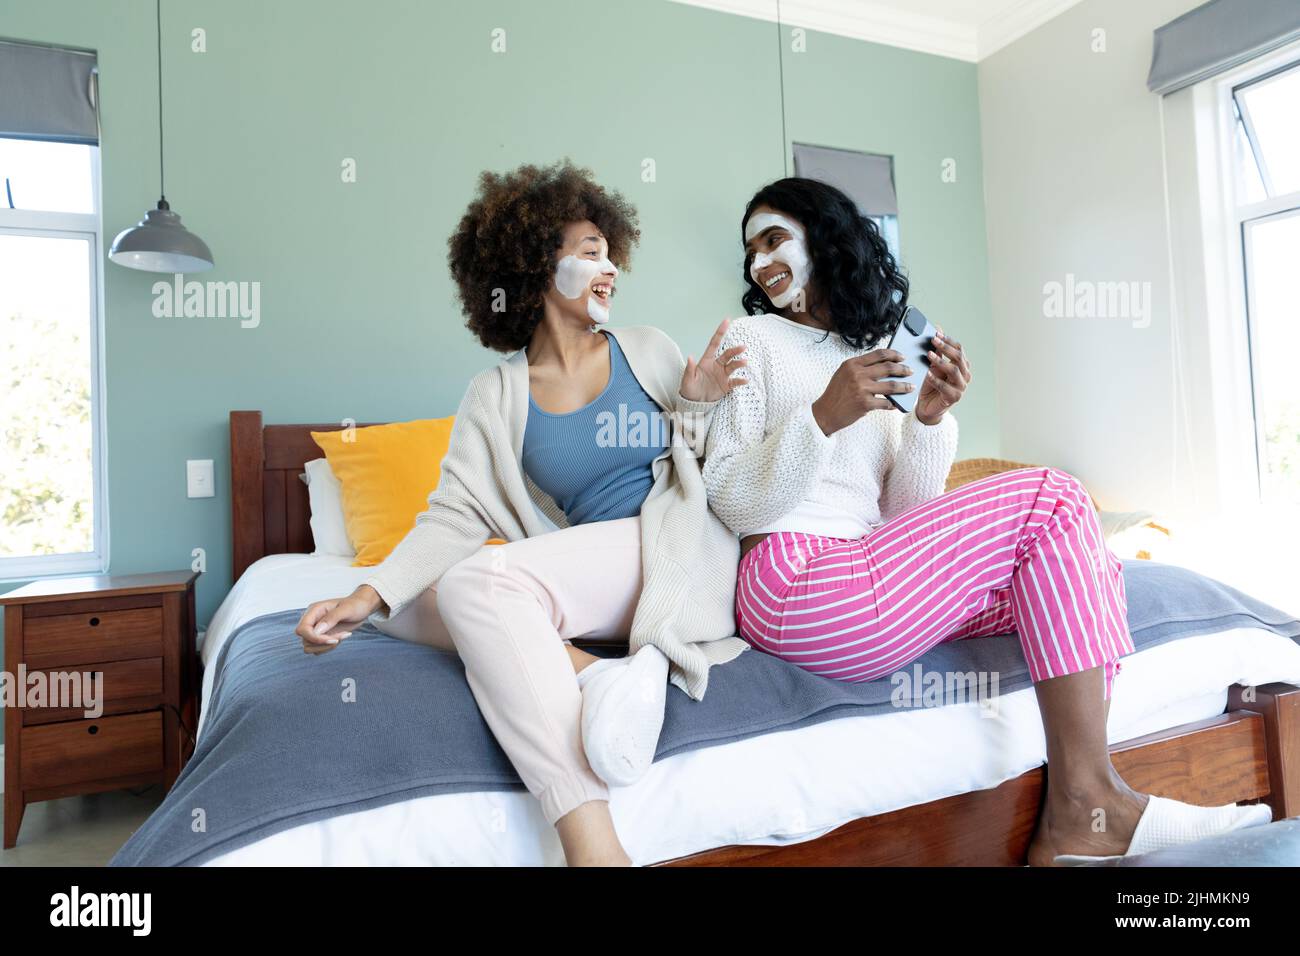 Jeunes amies biraciales gaies avec des crèmes faciales sur les visages regardant les uns les autres sur le lit Banque D'Images